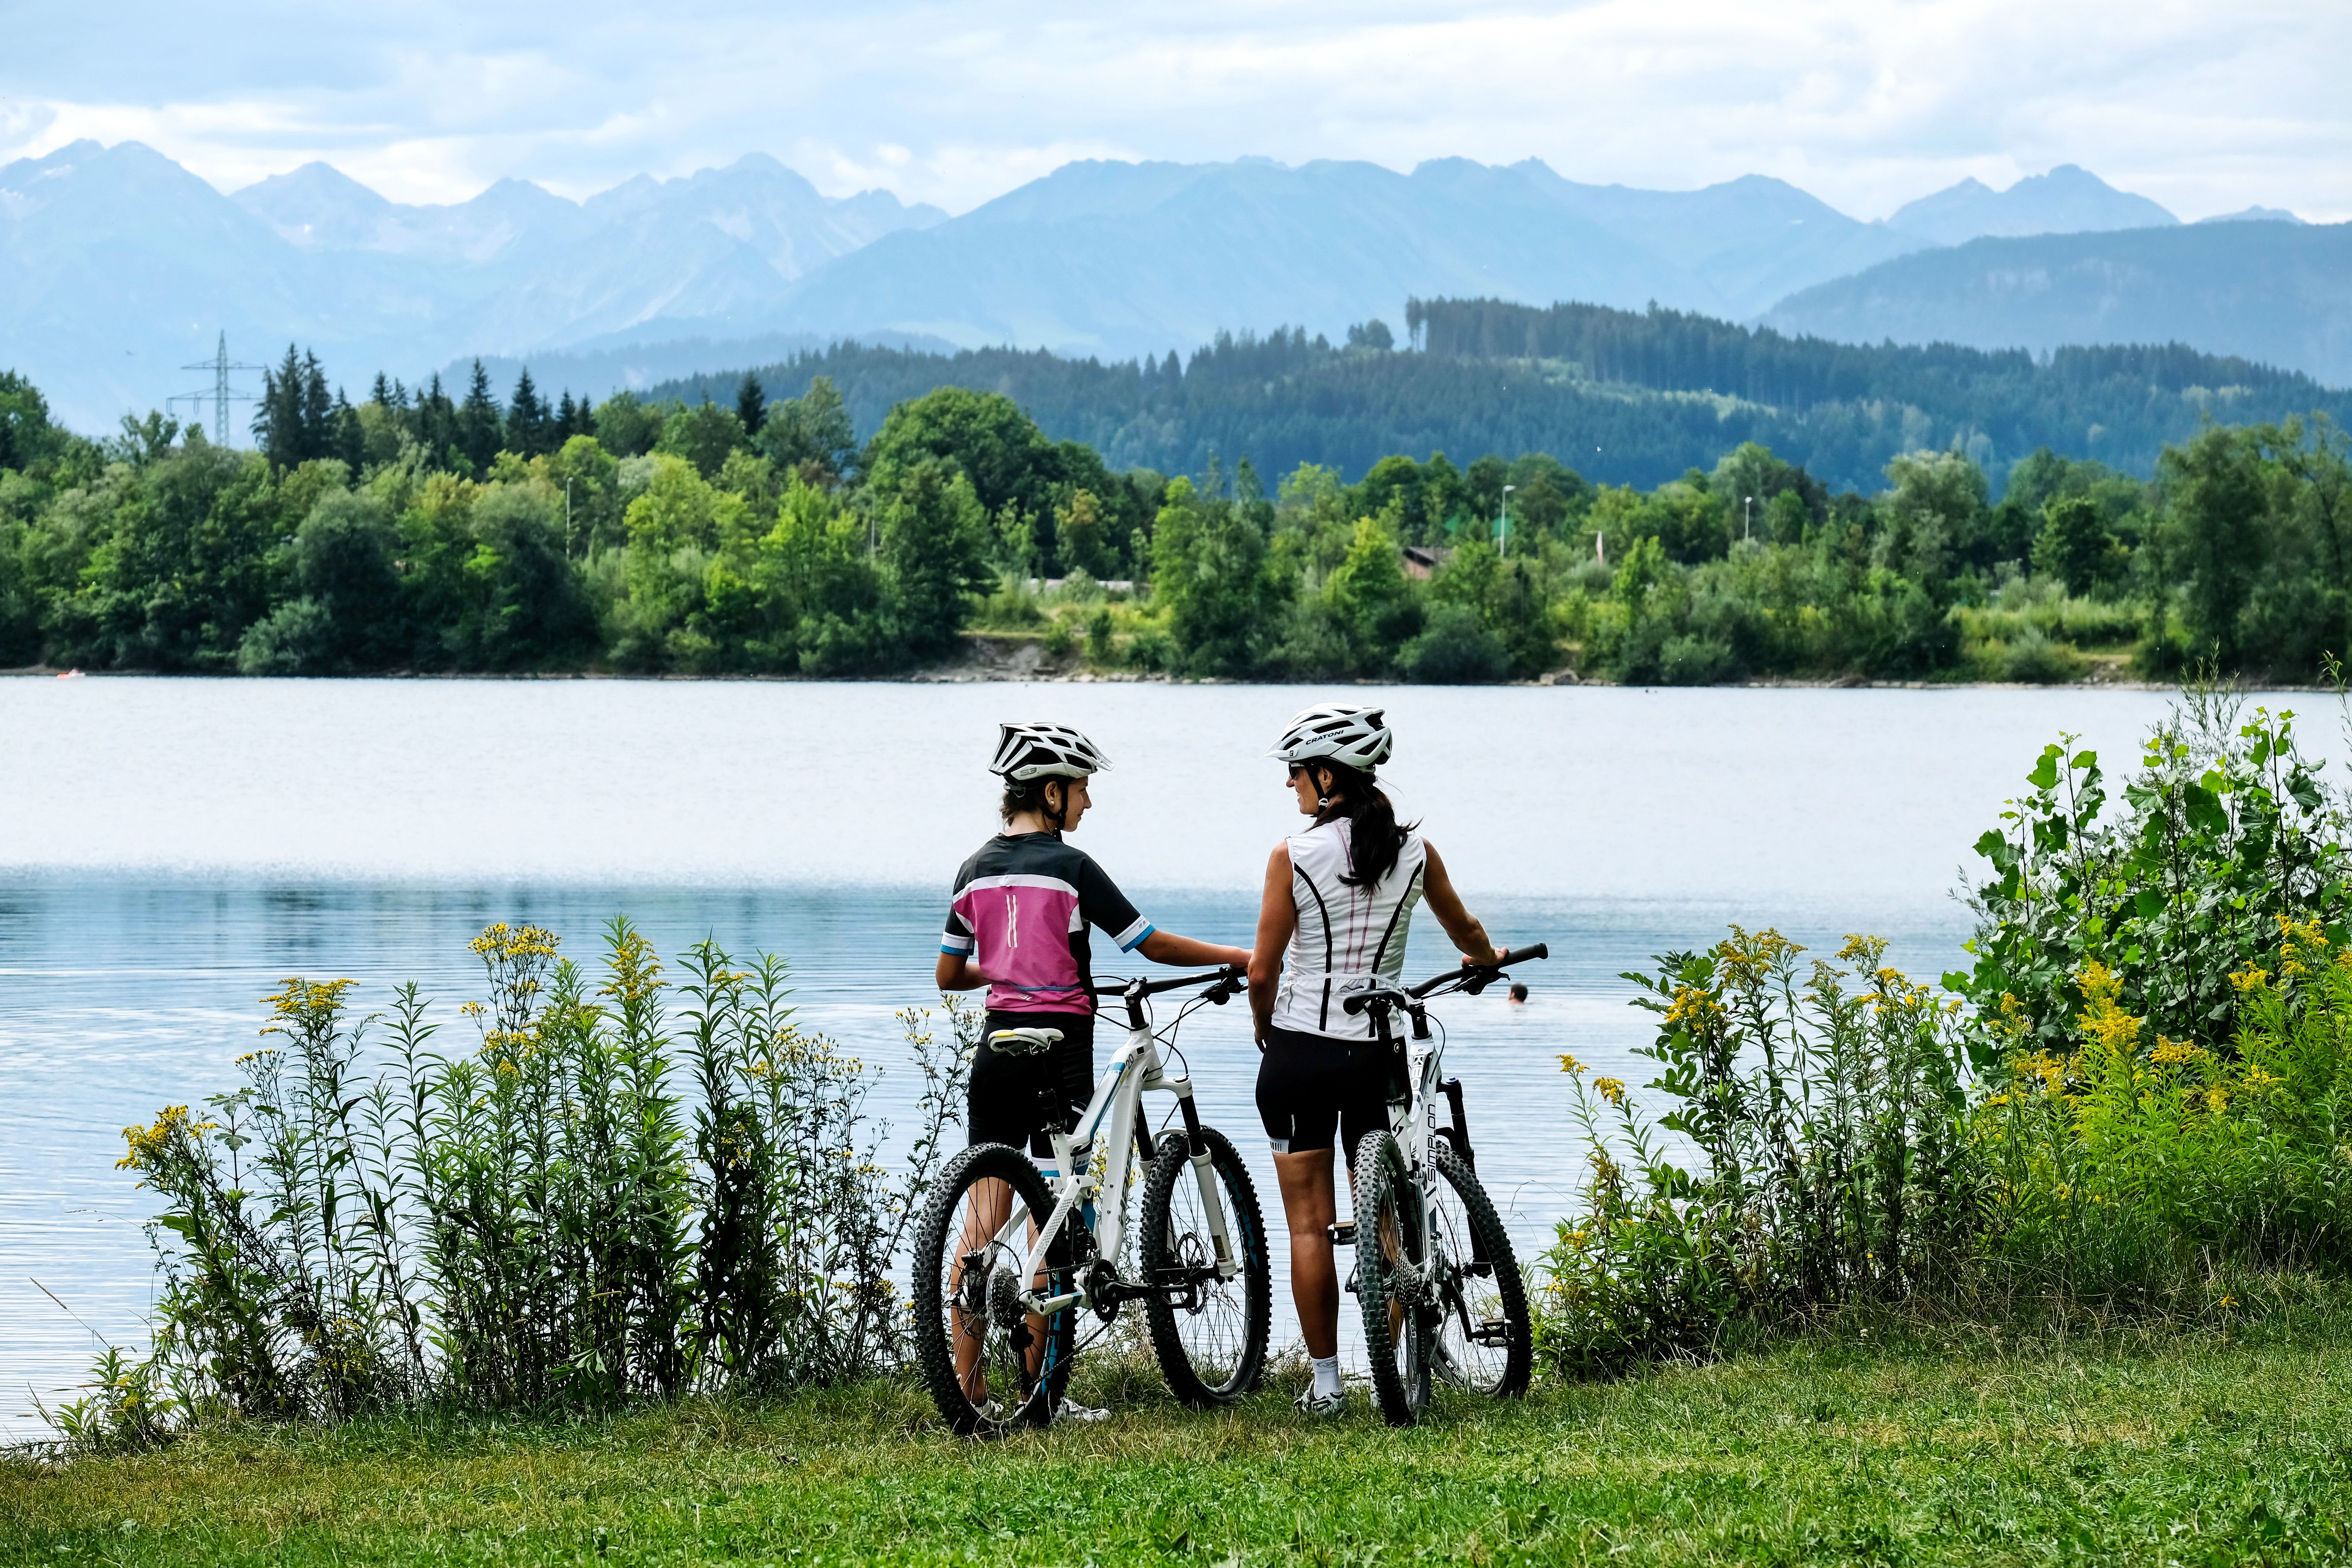 Die 3-Seen-Runde ist eine familienfreundliche Einsteiger-Fahrradtour die entlang von Gewässer verläuft. Die Radtour führt vorbei am Ortwanger Baggersee bei Burgberg, der im Sommer ein beliebter Badesee in der Region Alpsee-Grünten ist.